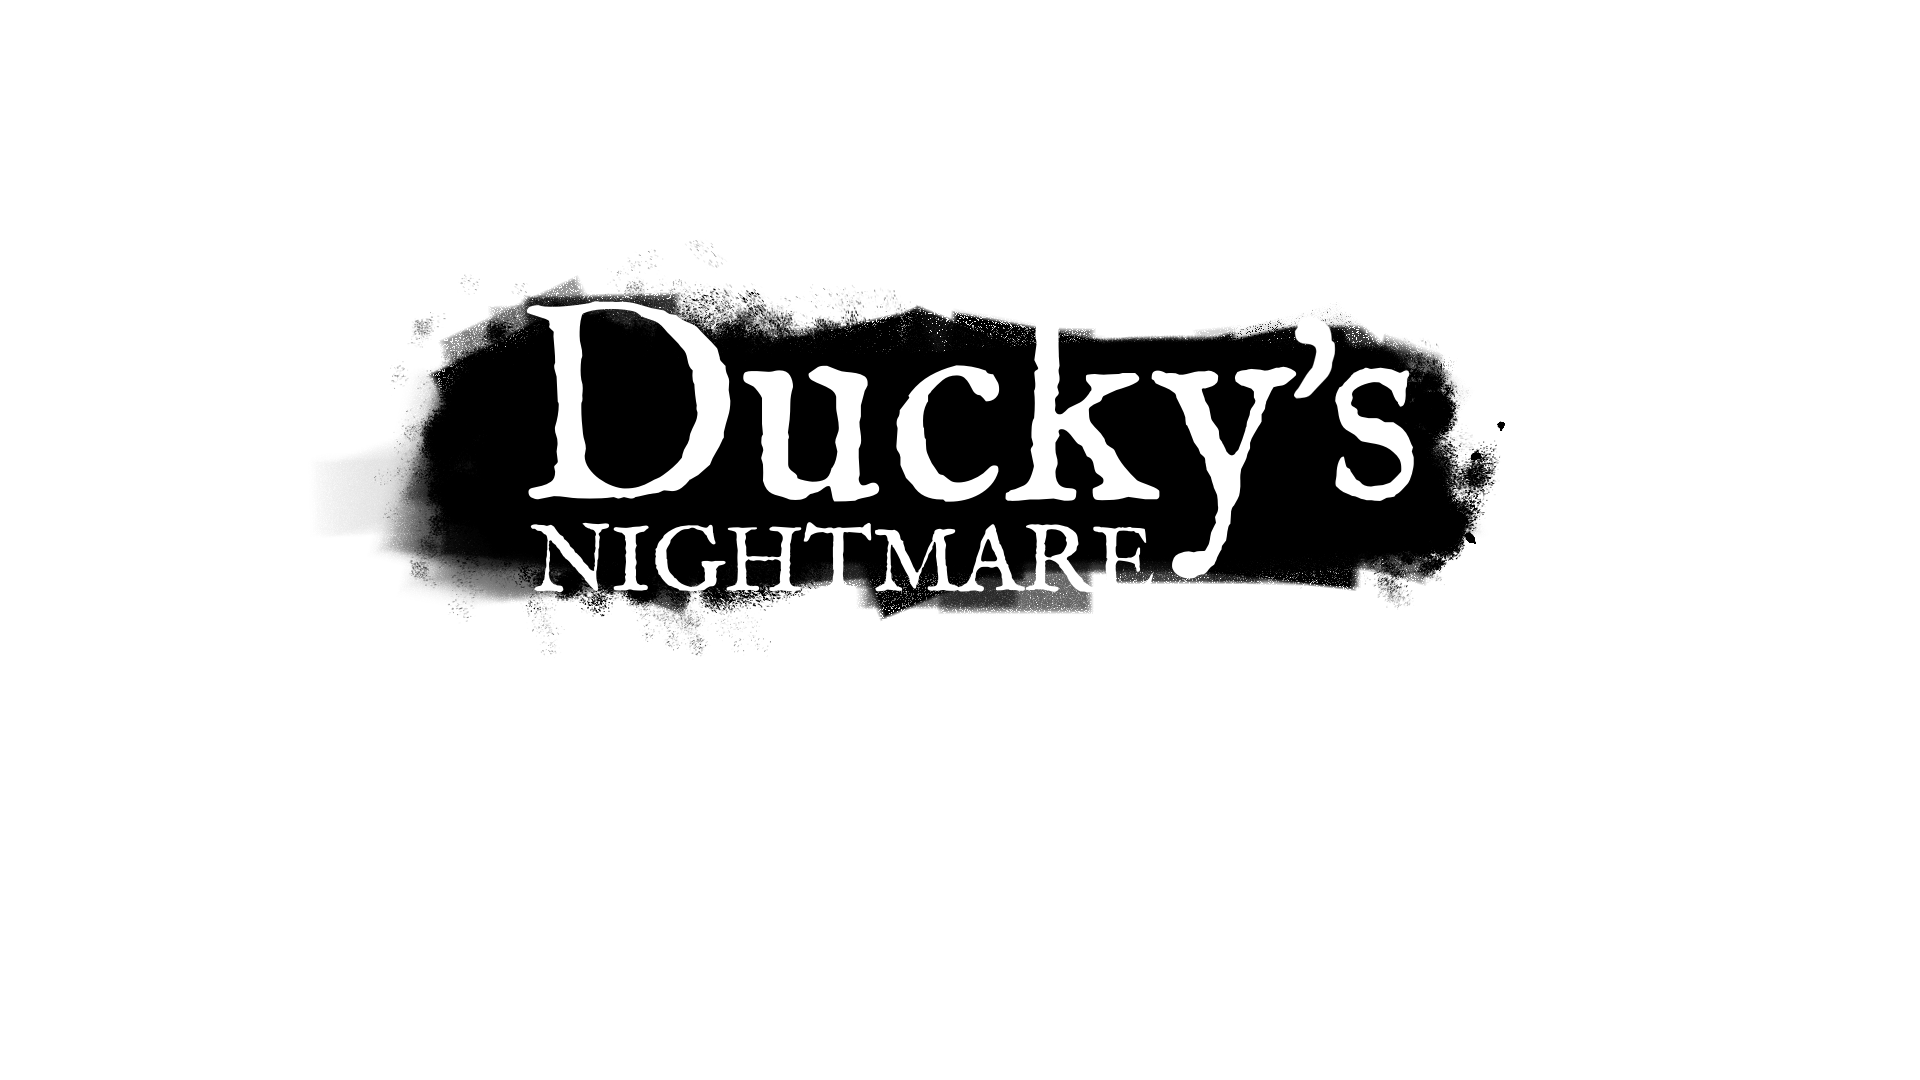 Ducky's Nightmare